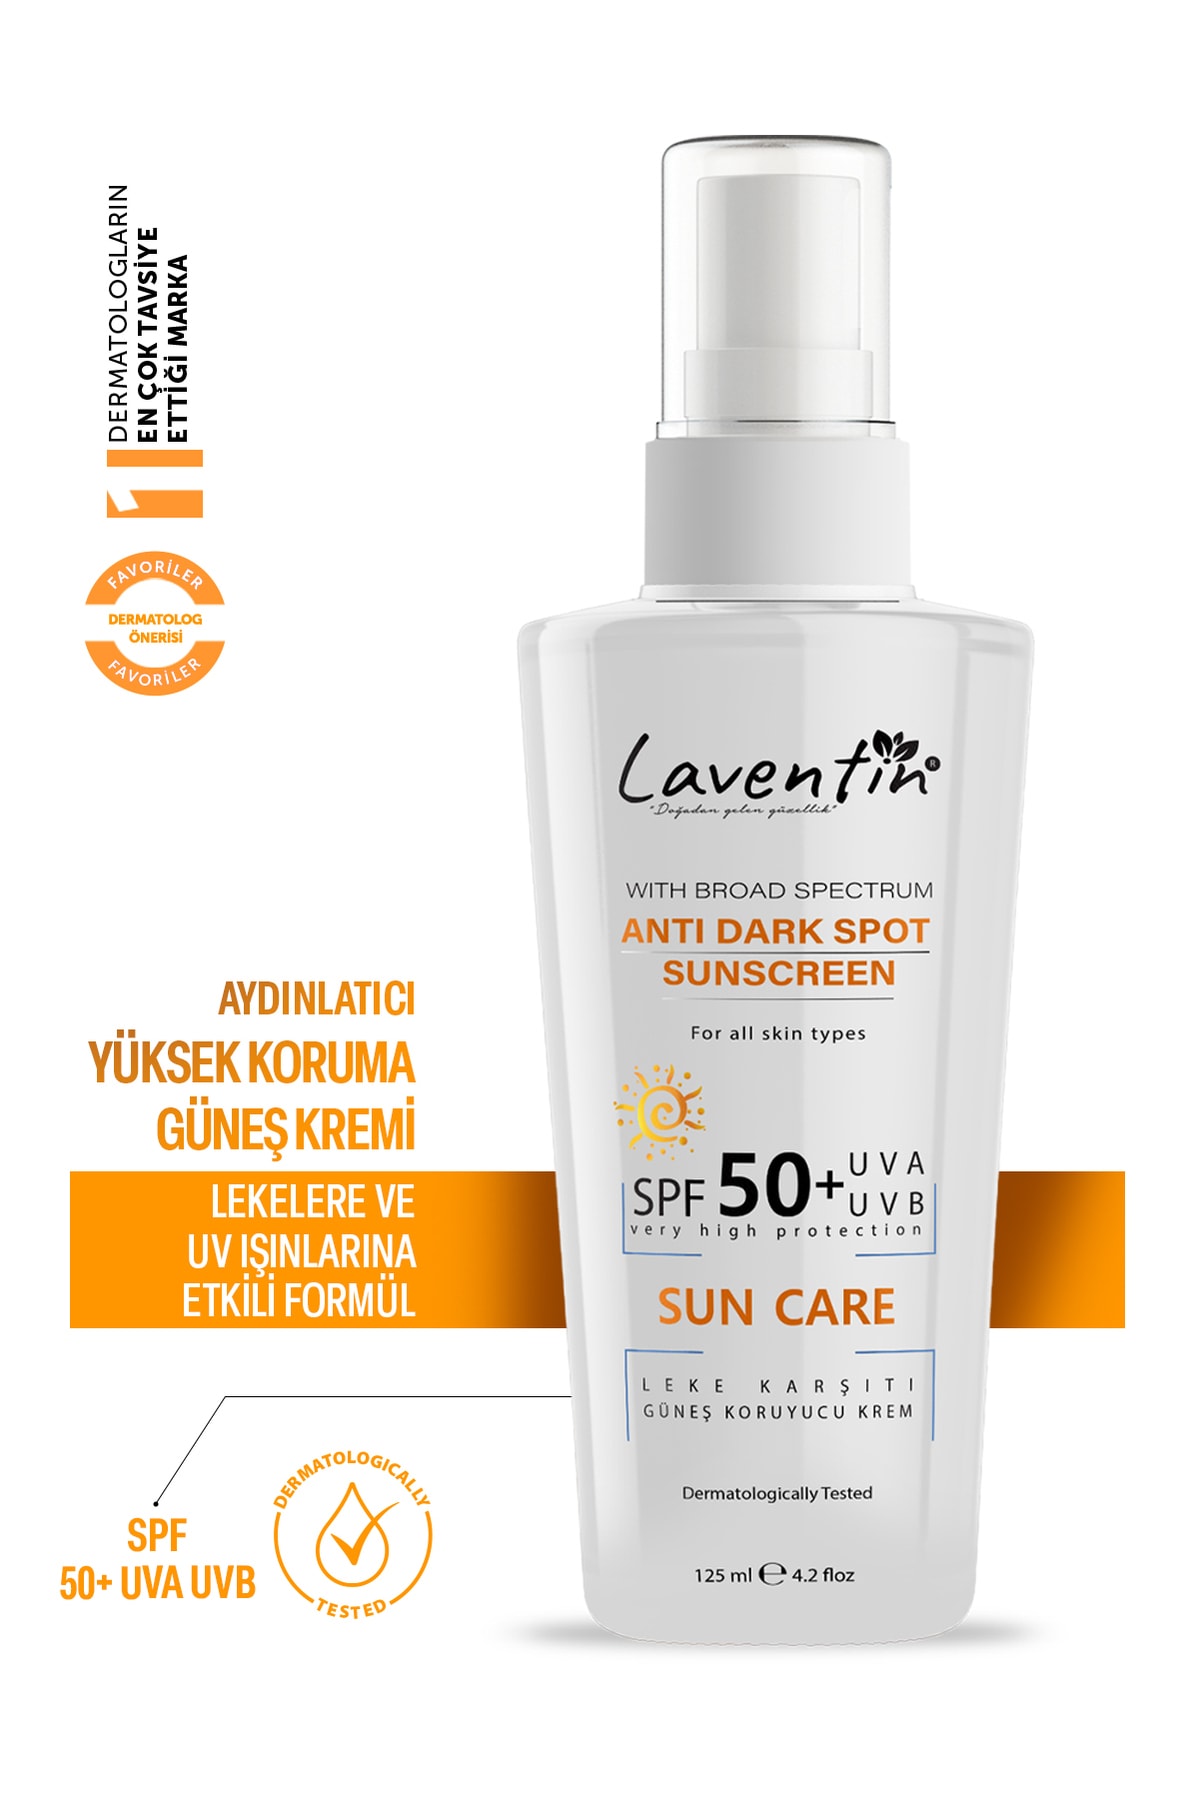 Laventin Yüz Ve Vücut Güneş Kremi 125ml Leke Karşıtı Aydınlatıcı Yüksek Korumalı Spf 50+